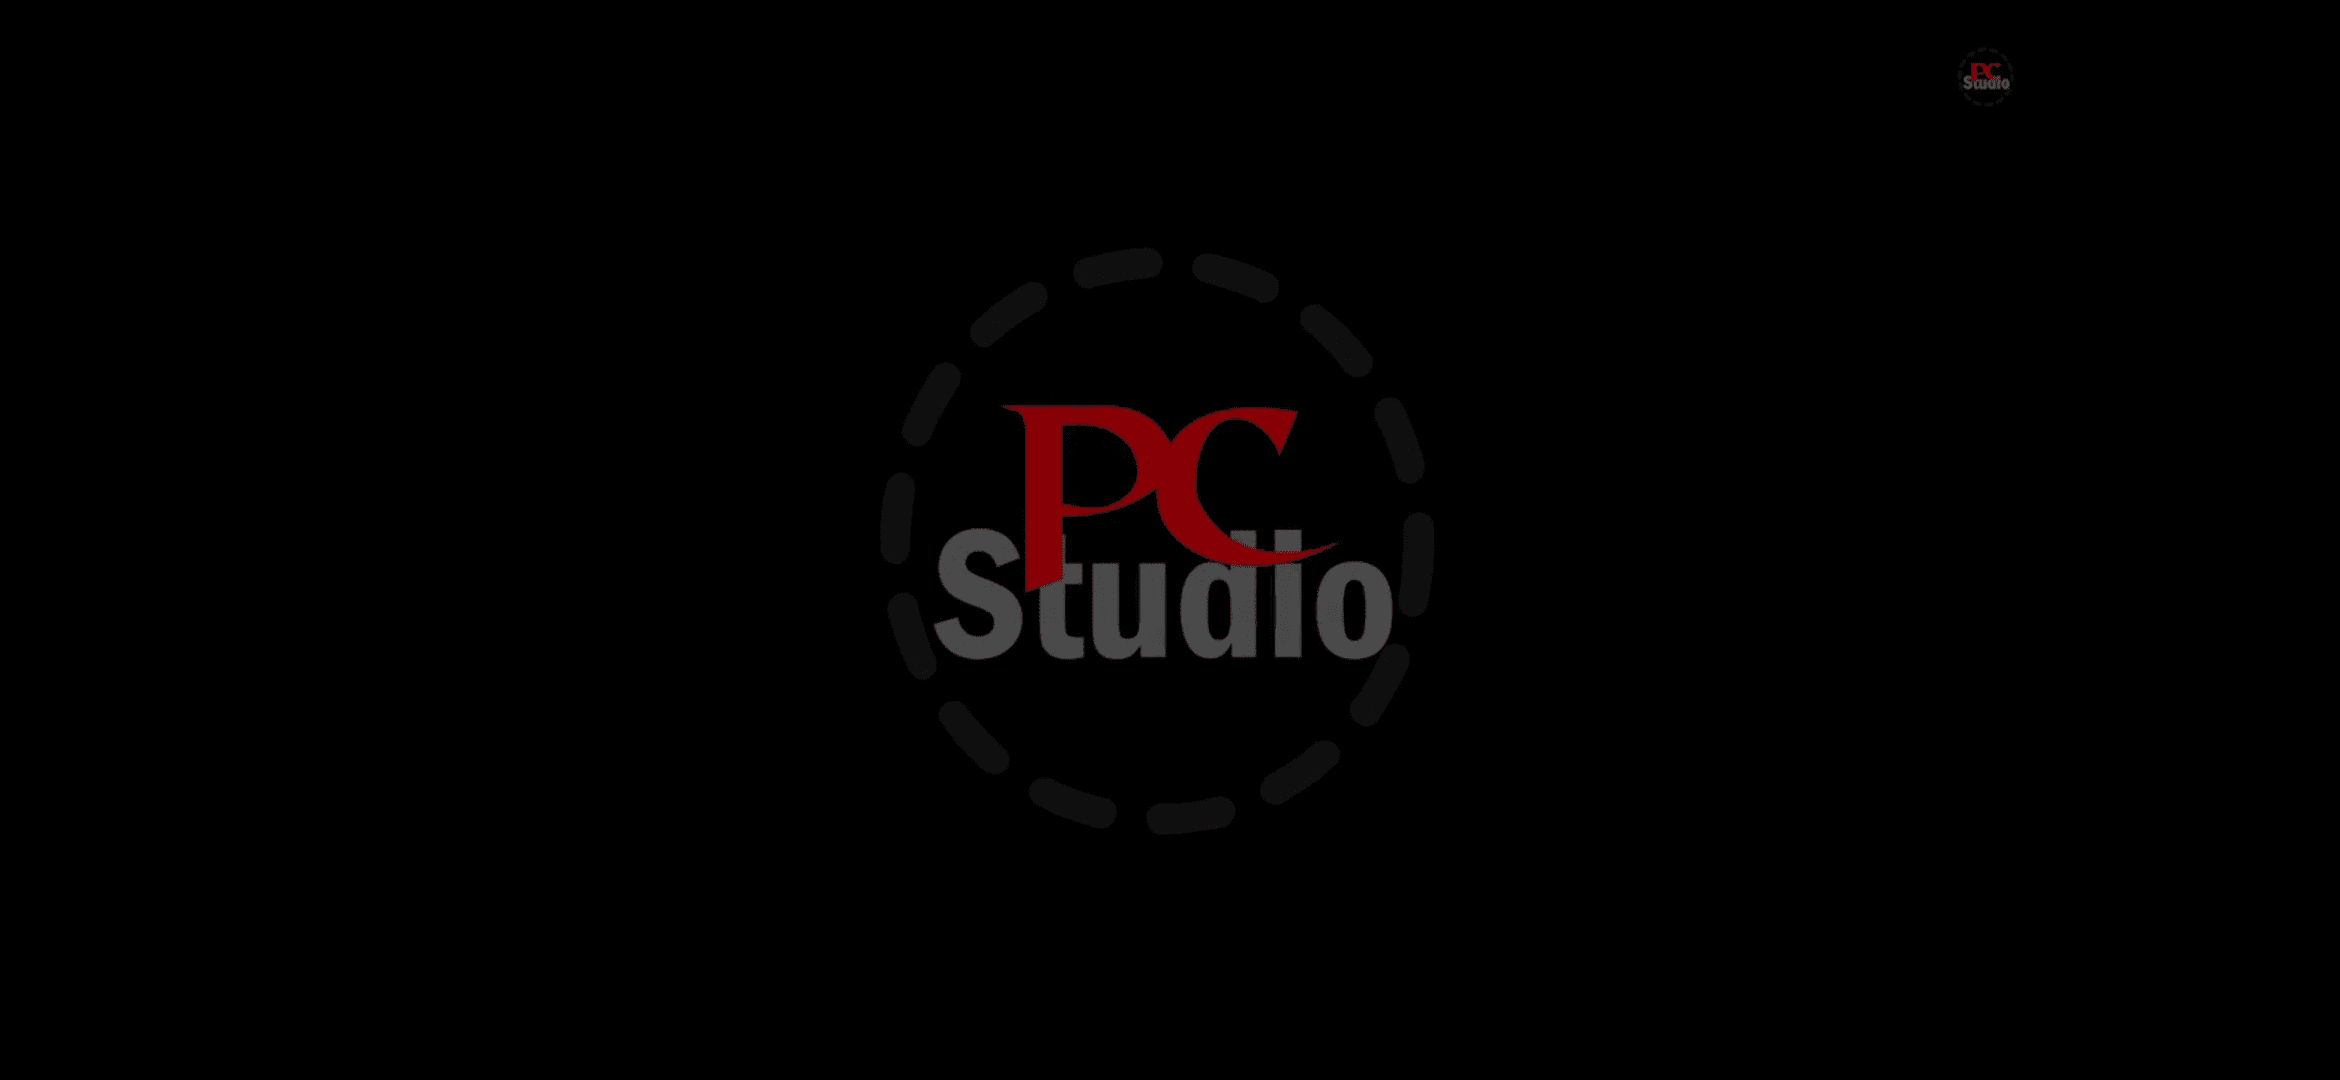 PC Studio